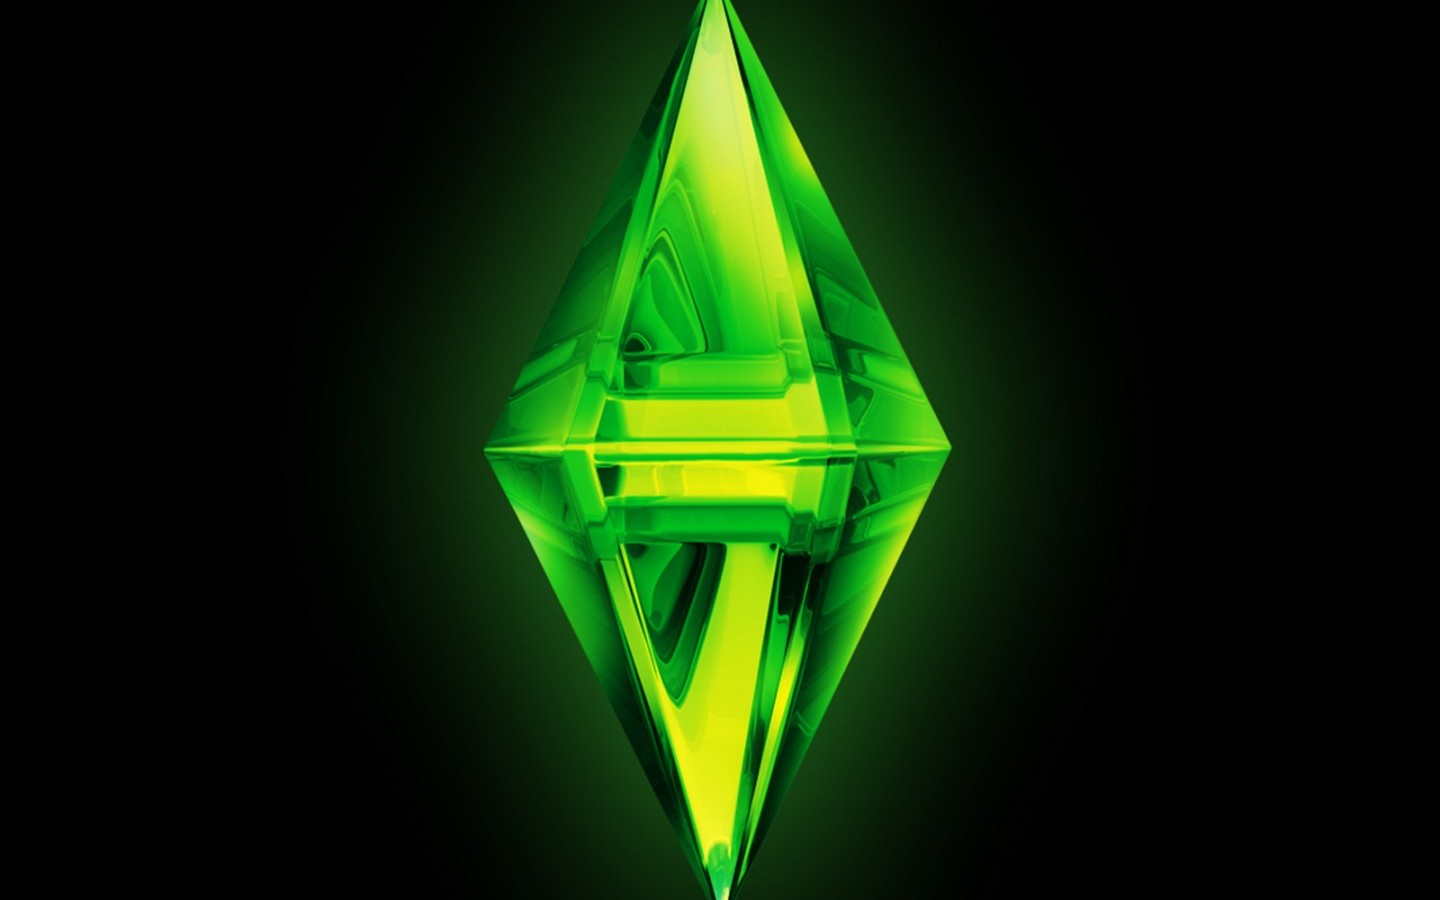 Los mejores fondos de pantalla de Los Sims 3 para la pantalla del teléfono